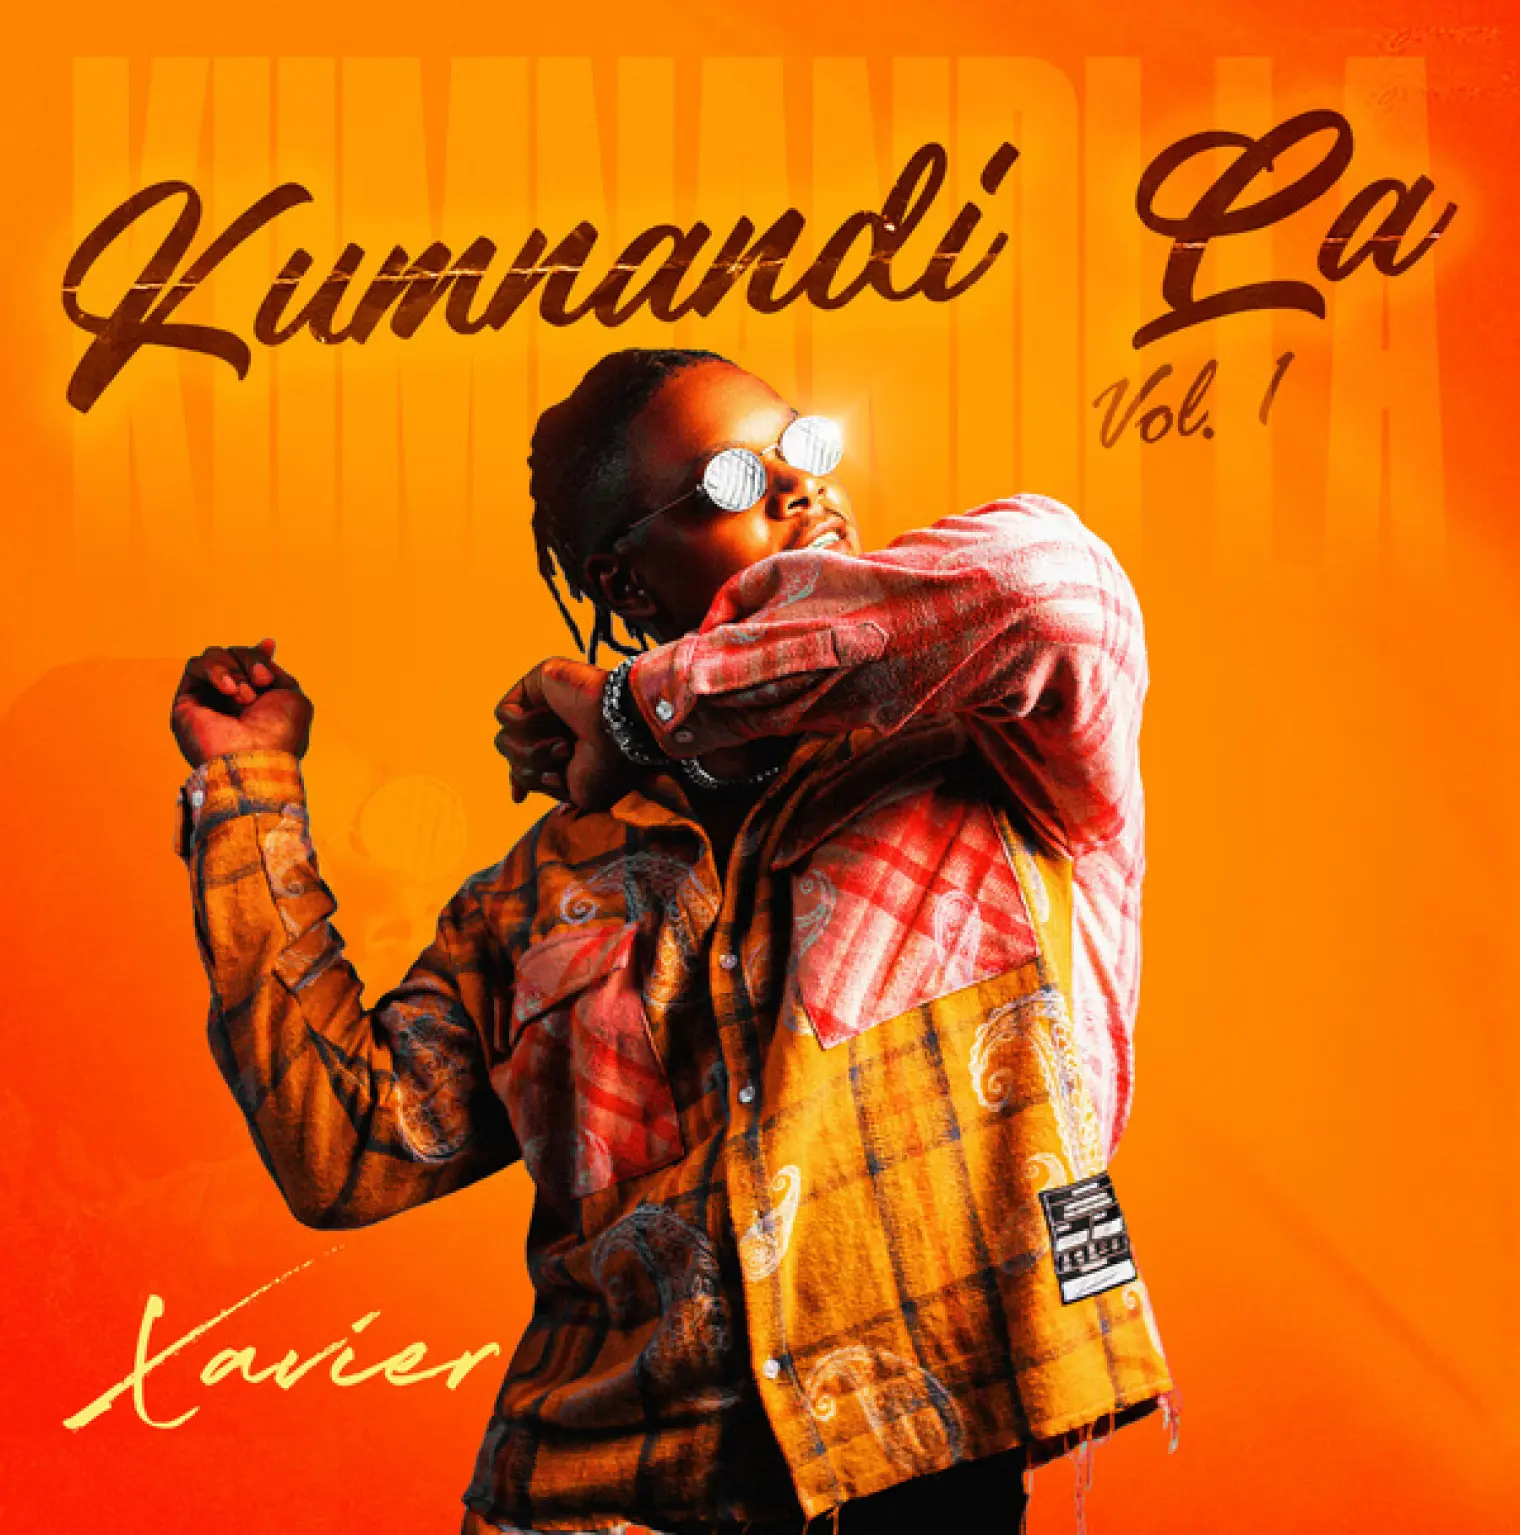 Kumnandi La, Vol. 1 -  Xavier 